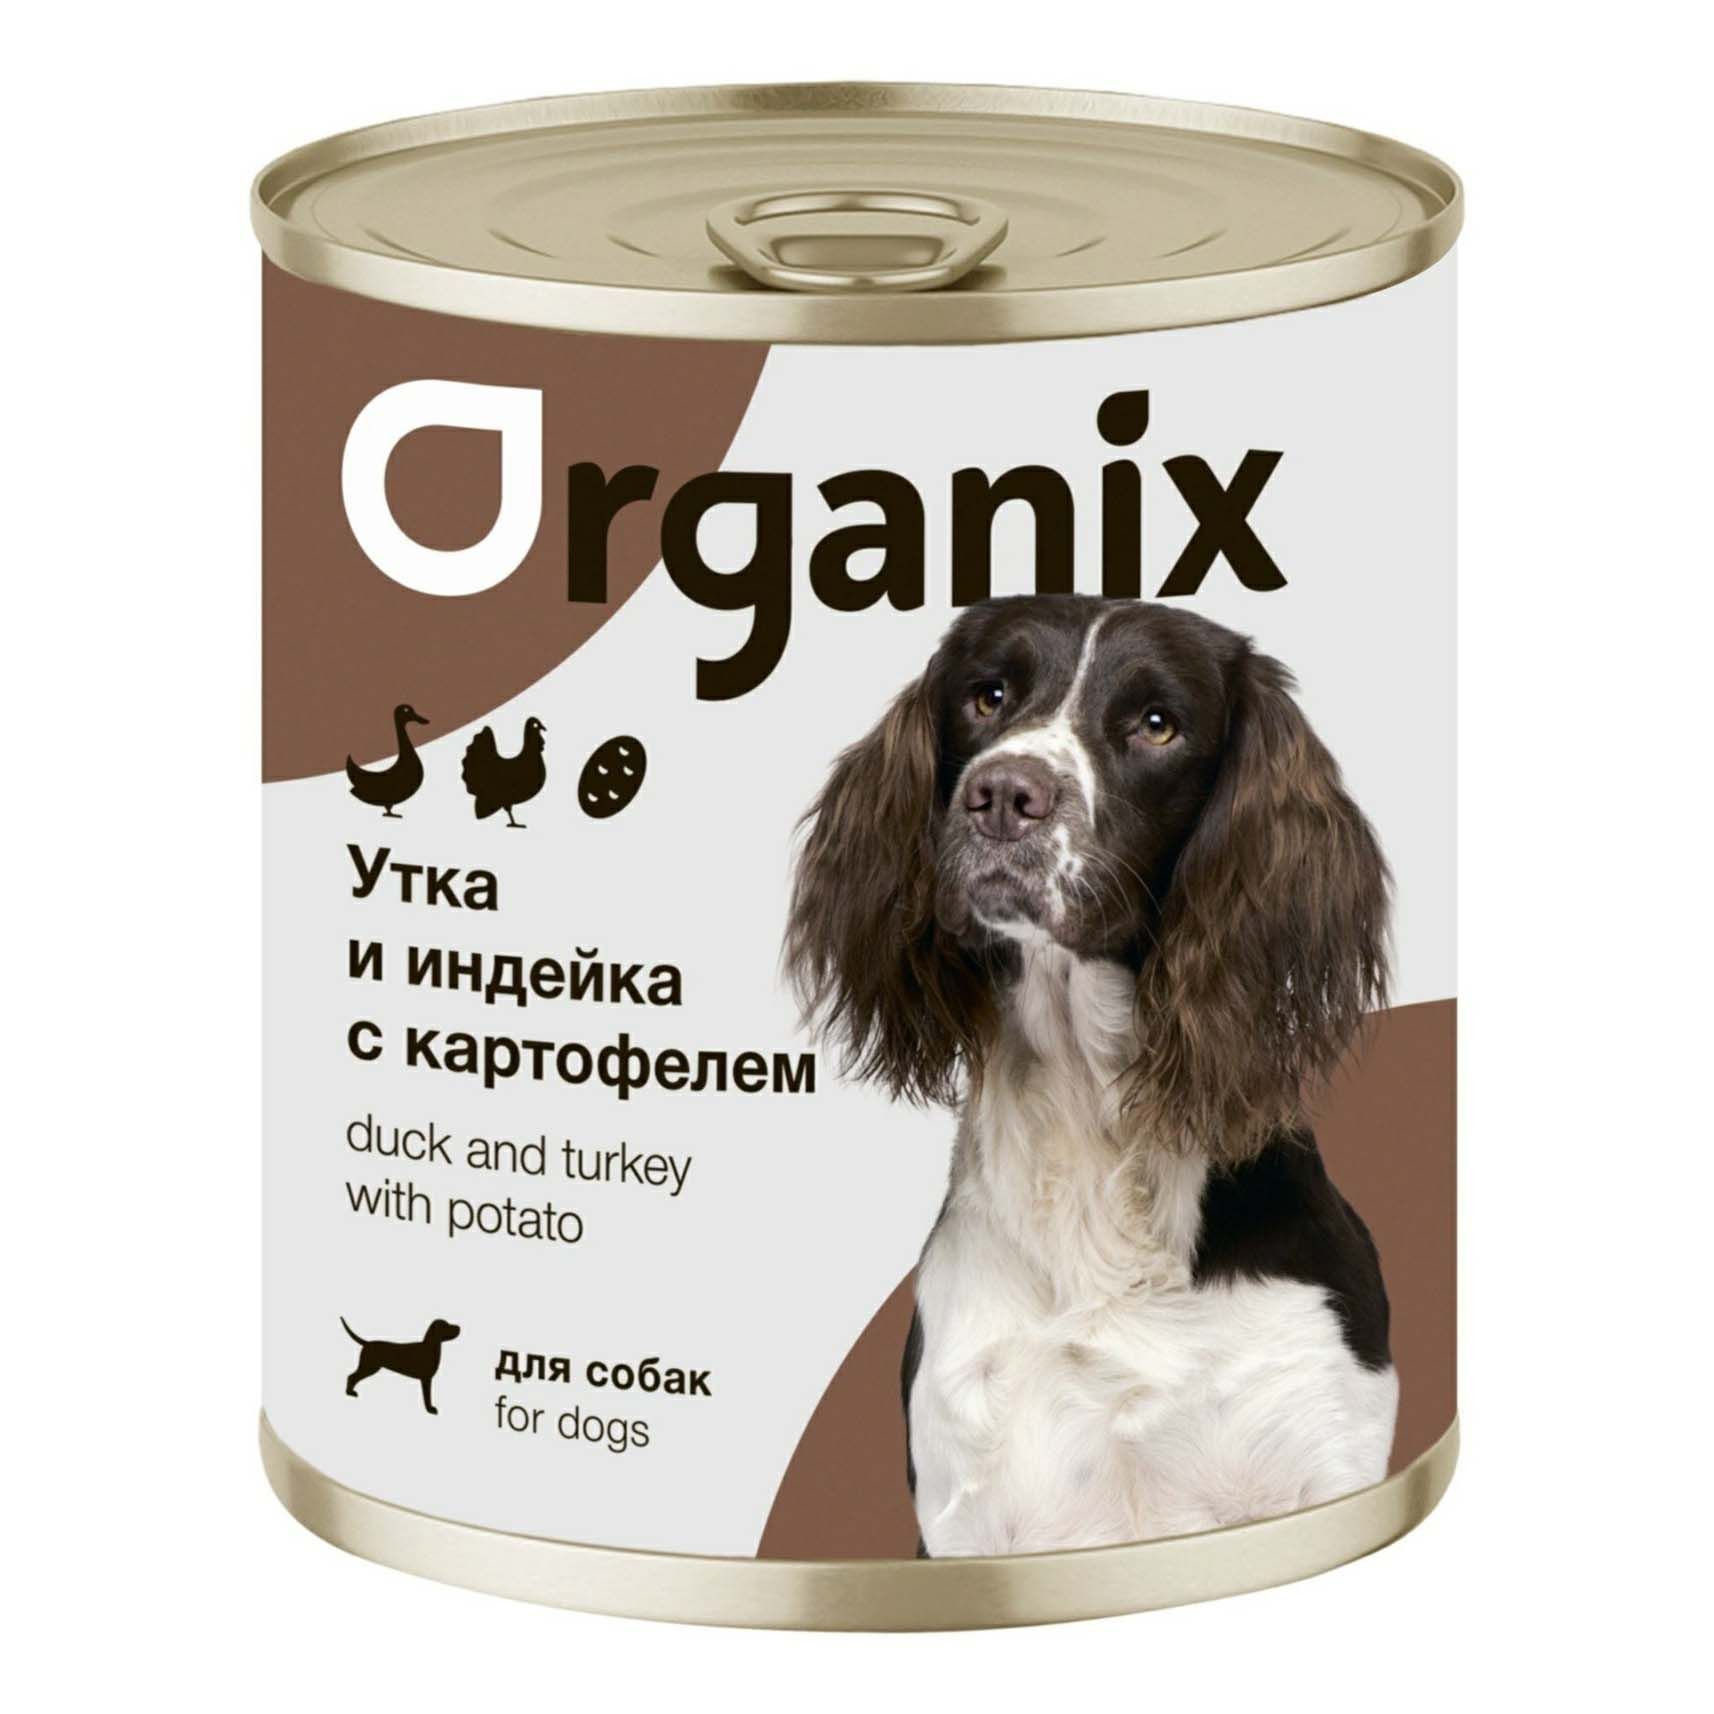 Влажный корм Organix утка-индейка-картофель для собак 750 г